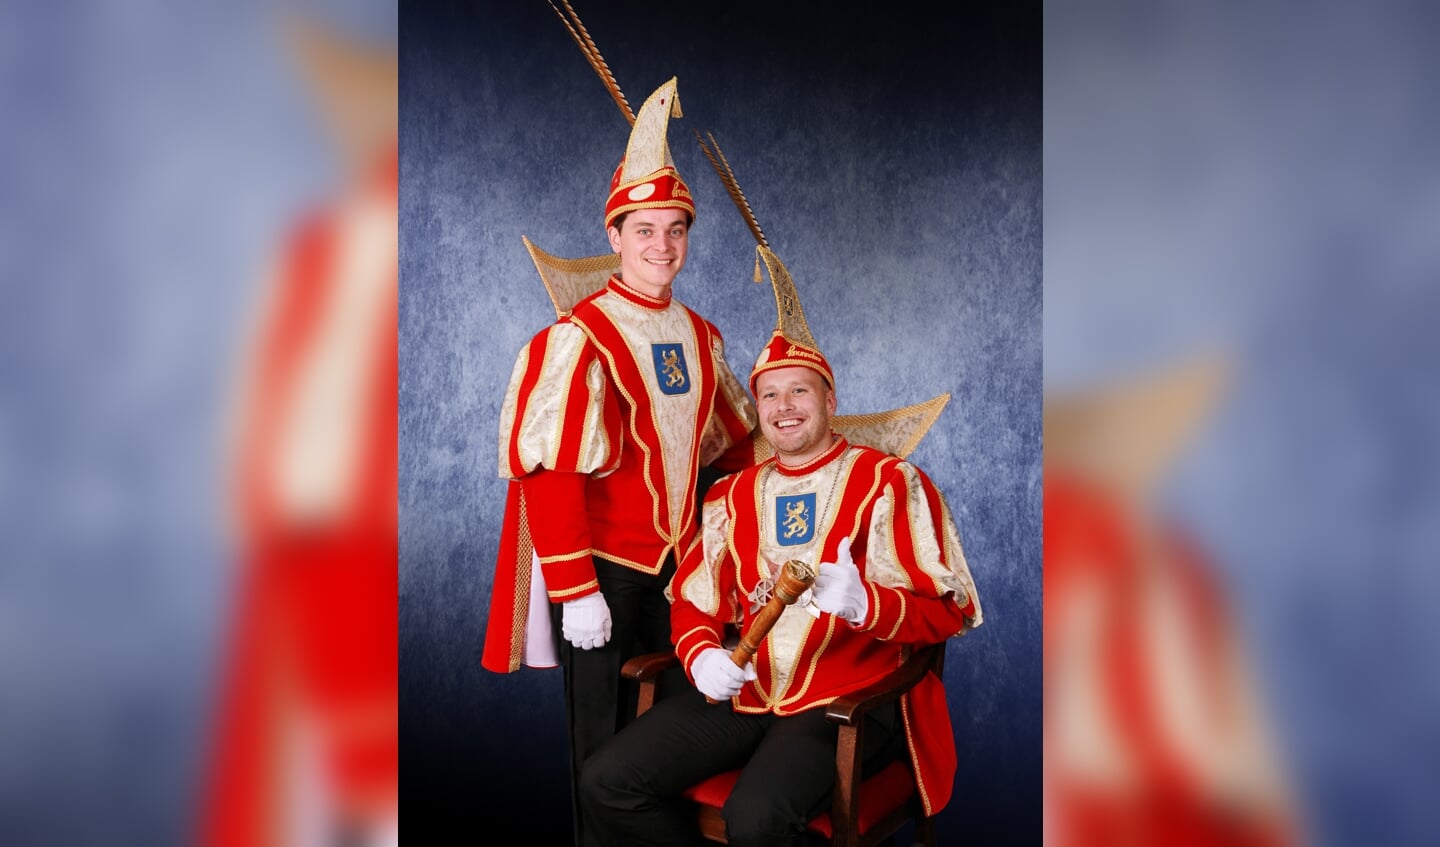 Zittend prins Ivo I en staand adjudant Mark van CV De Knunnekes tijdens de carnavalscampagne 2018-2019. Foto: PR CV De Knunnekes